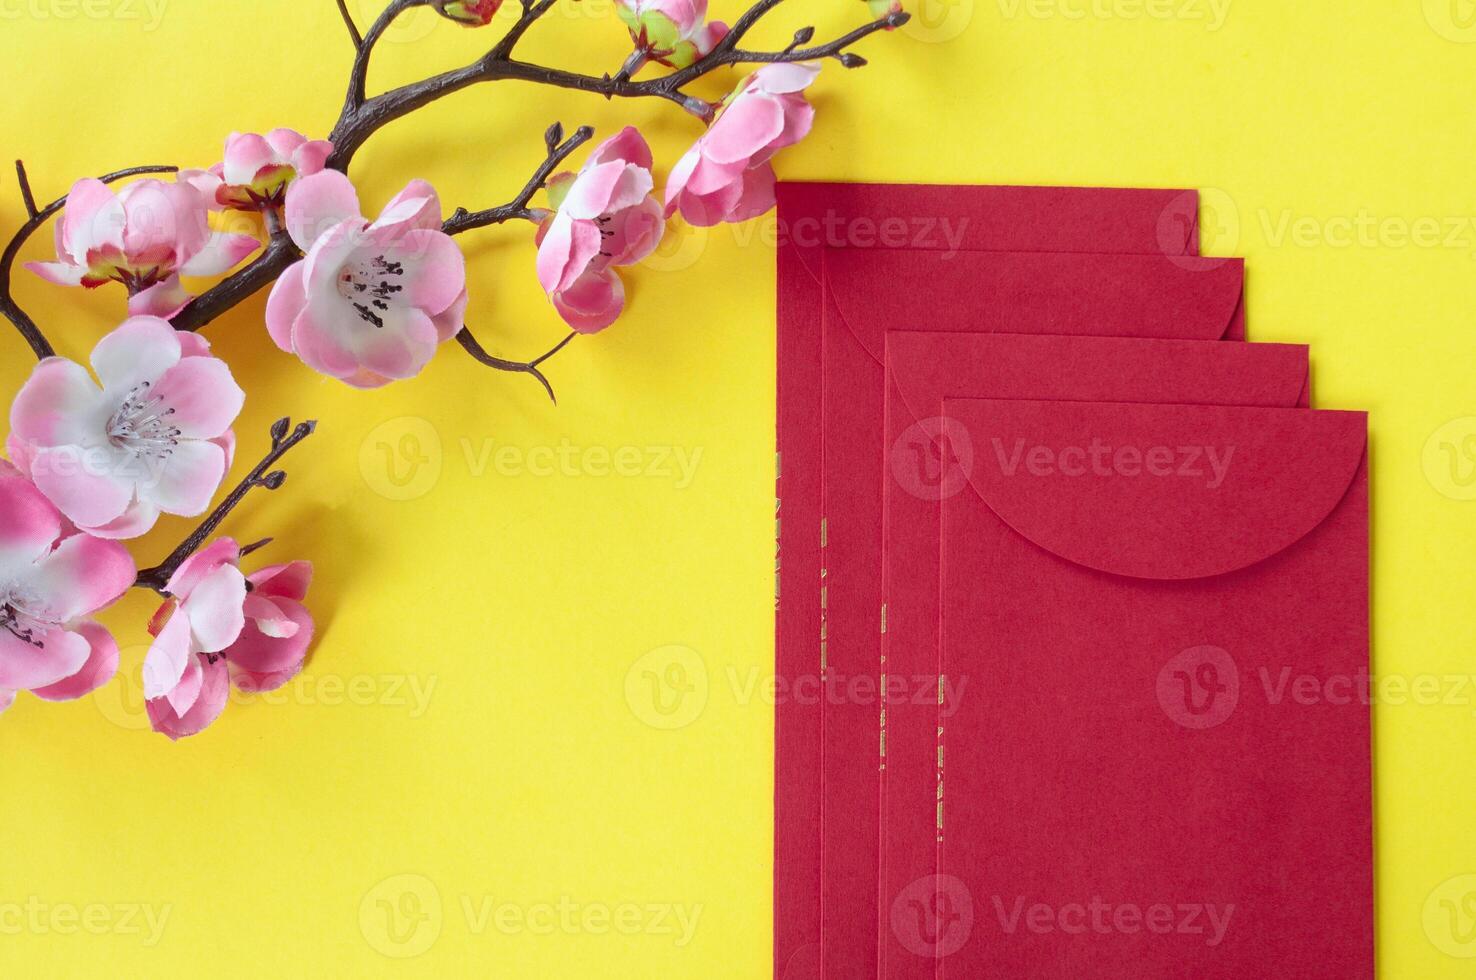 topp se av kinesisk ny år röd paket och körsbär blomma dekoration med anpassningsbar Plats för text eller lyckönskningar. kinesisk ny år firande begrepp. foto